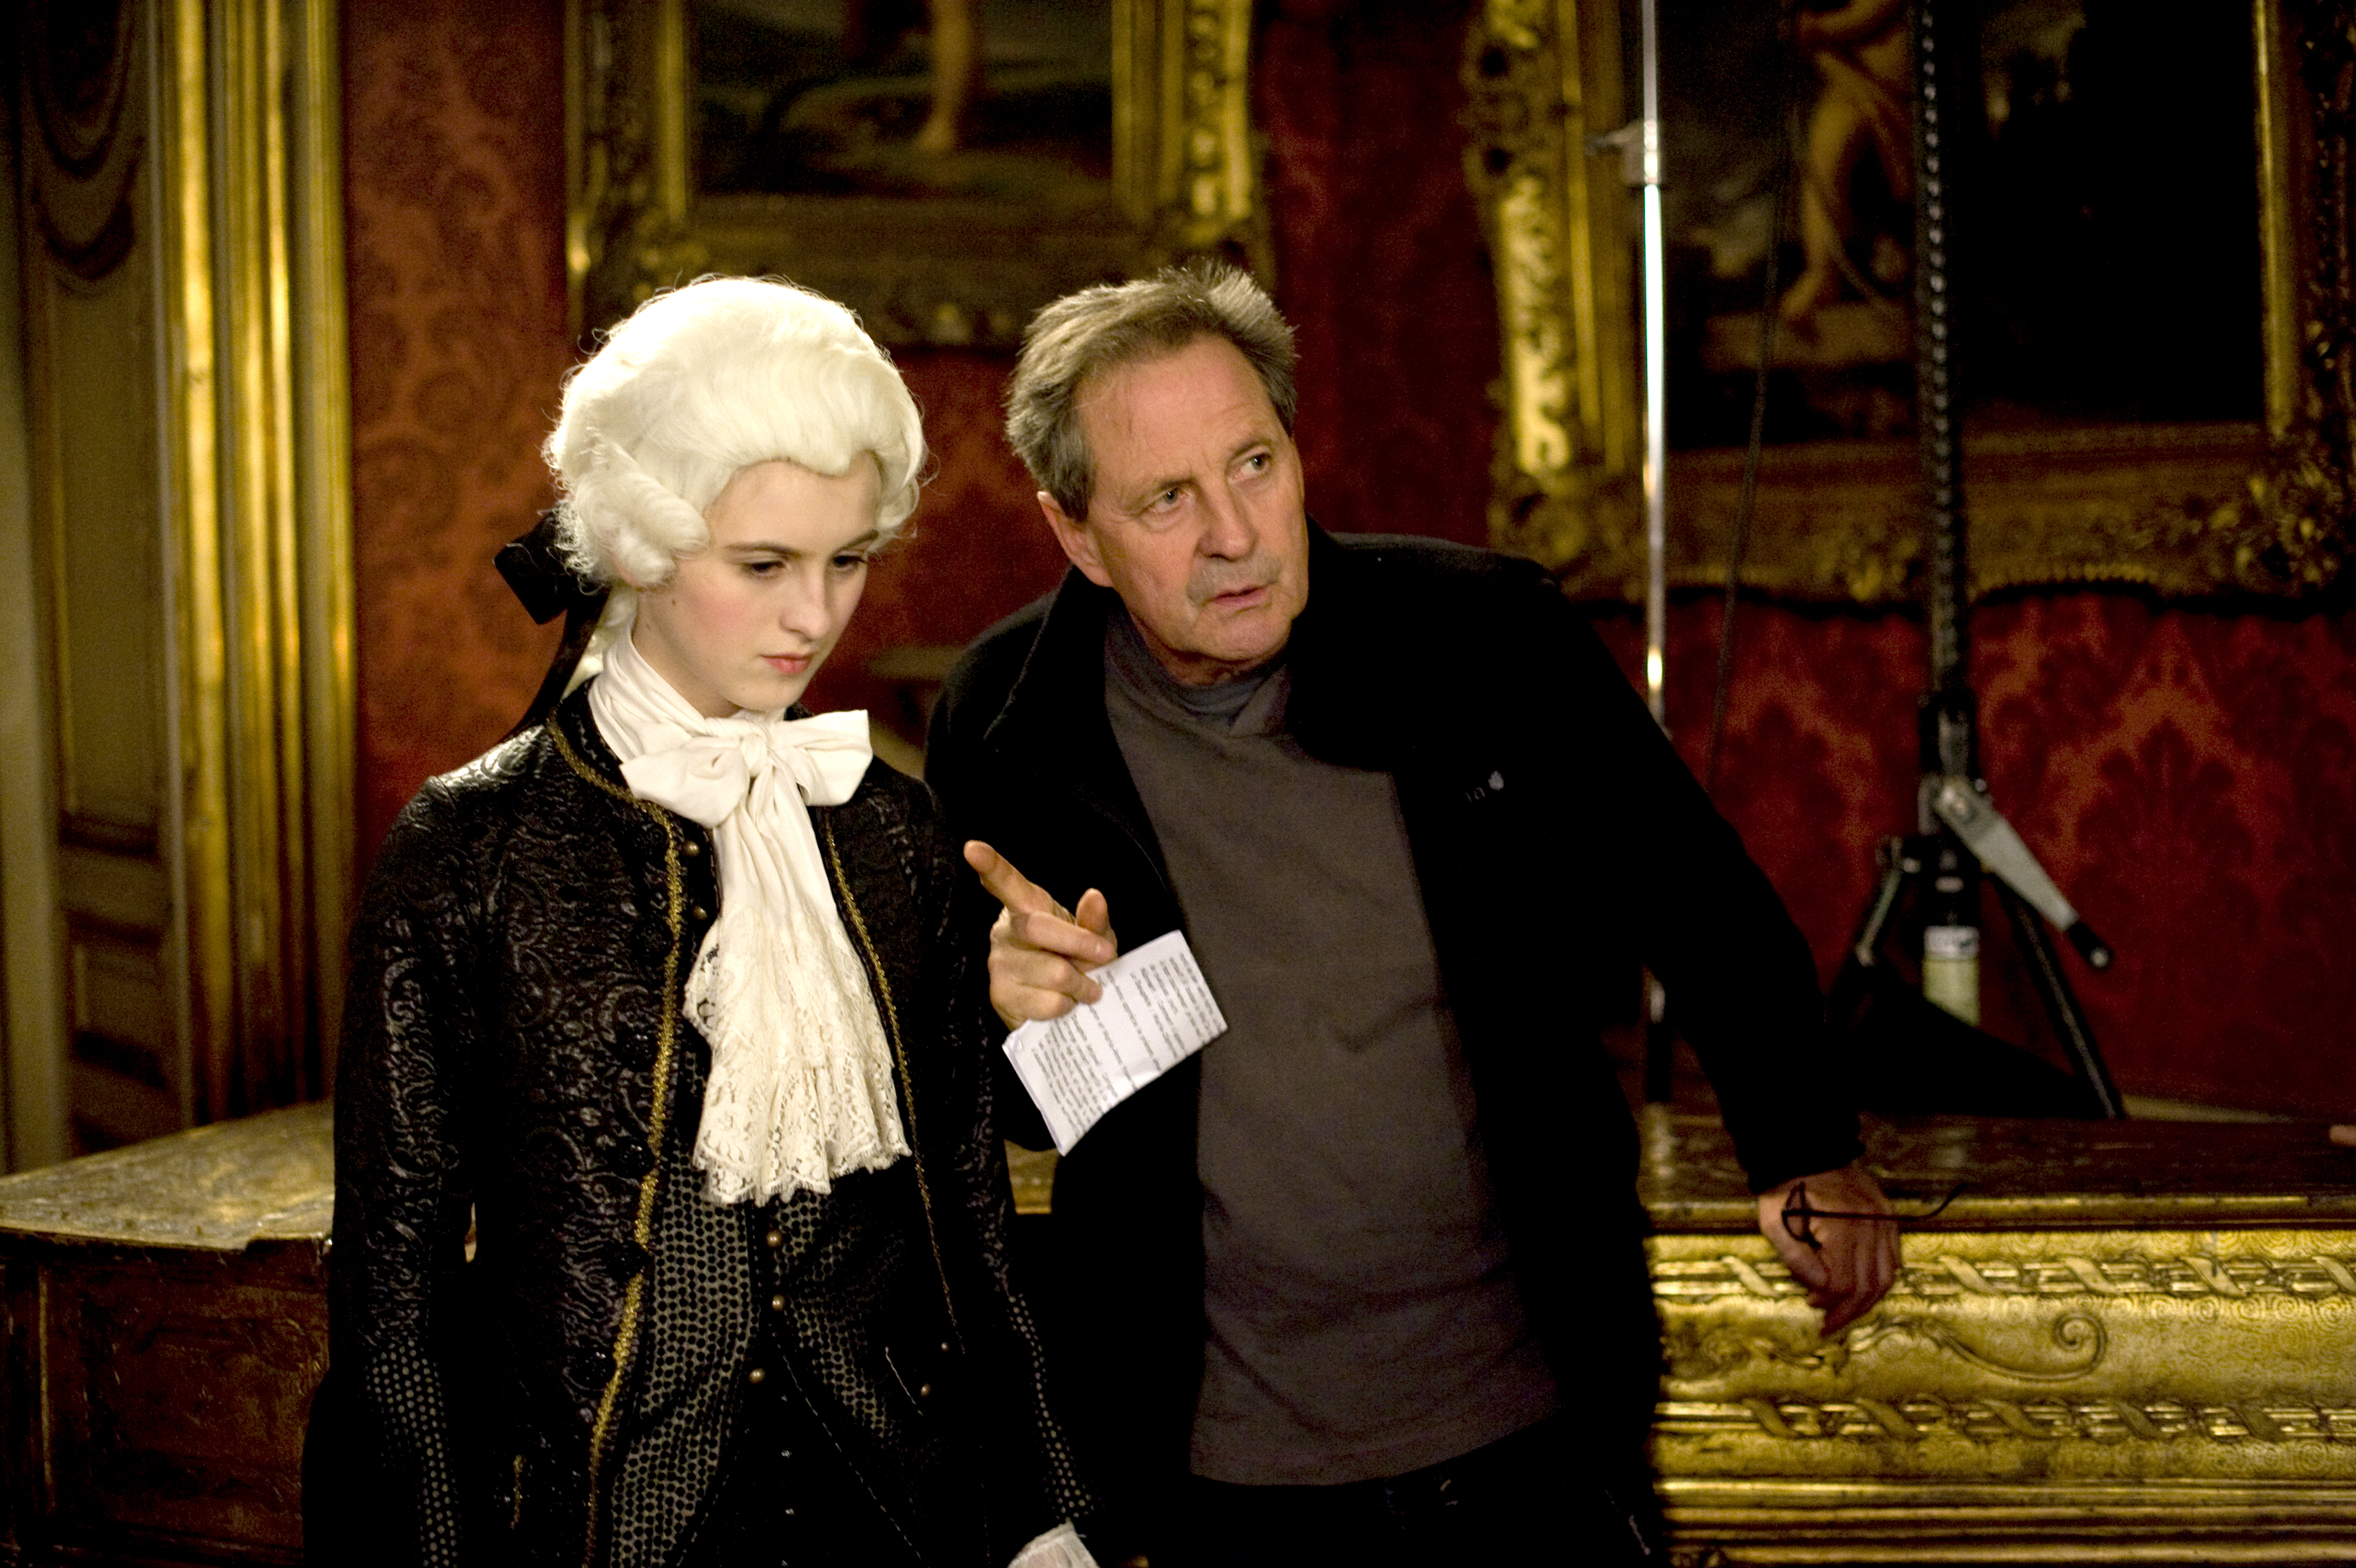 René Féret sur le tournage de Nannerl la soeur de Mozart